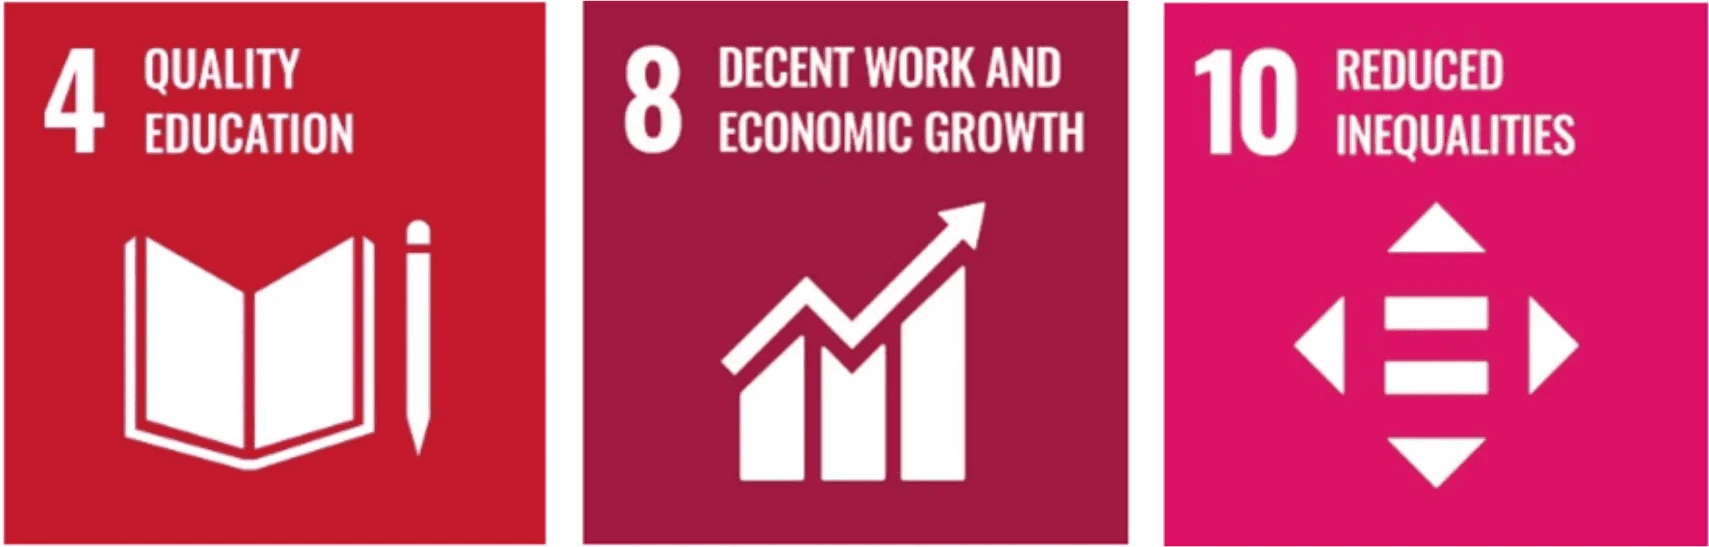 Die Kacheln von drei SDGs nebeneinander: Zuerst die rote Kachel von Ziel 4 "Hochwertige Bildung". In der Mitte die weinrote Kachel von Ziel 8 "Menschenwürdige Arbeit und Wirtschaftswachstum". Rechts die pinke Kachel von Ziel 10 "Weniger Ungleichheiten".